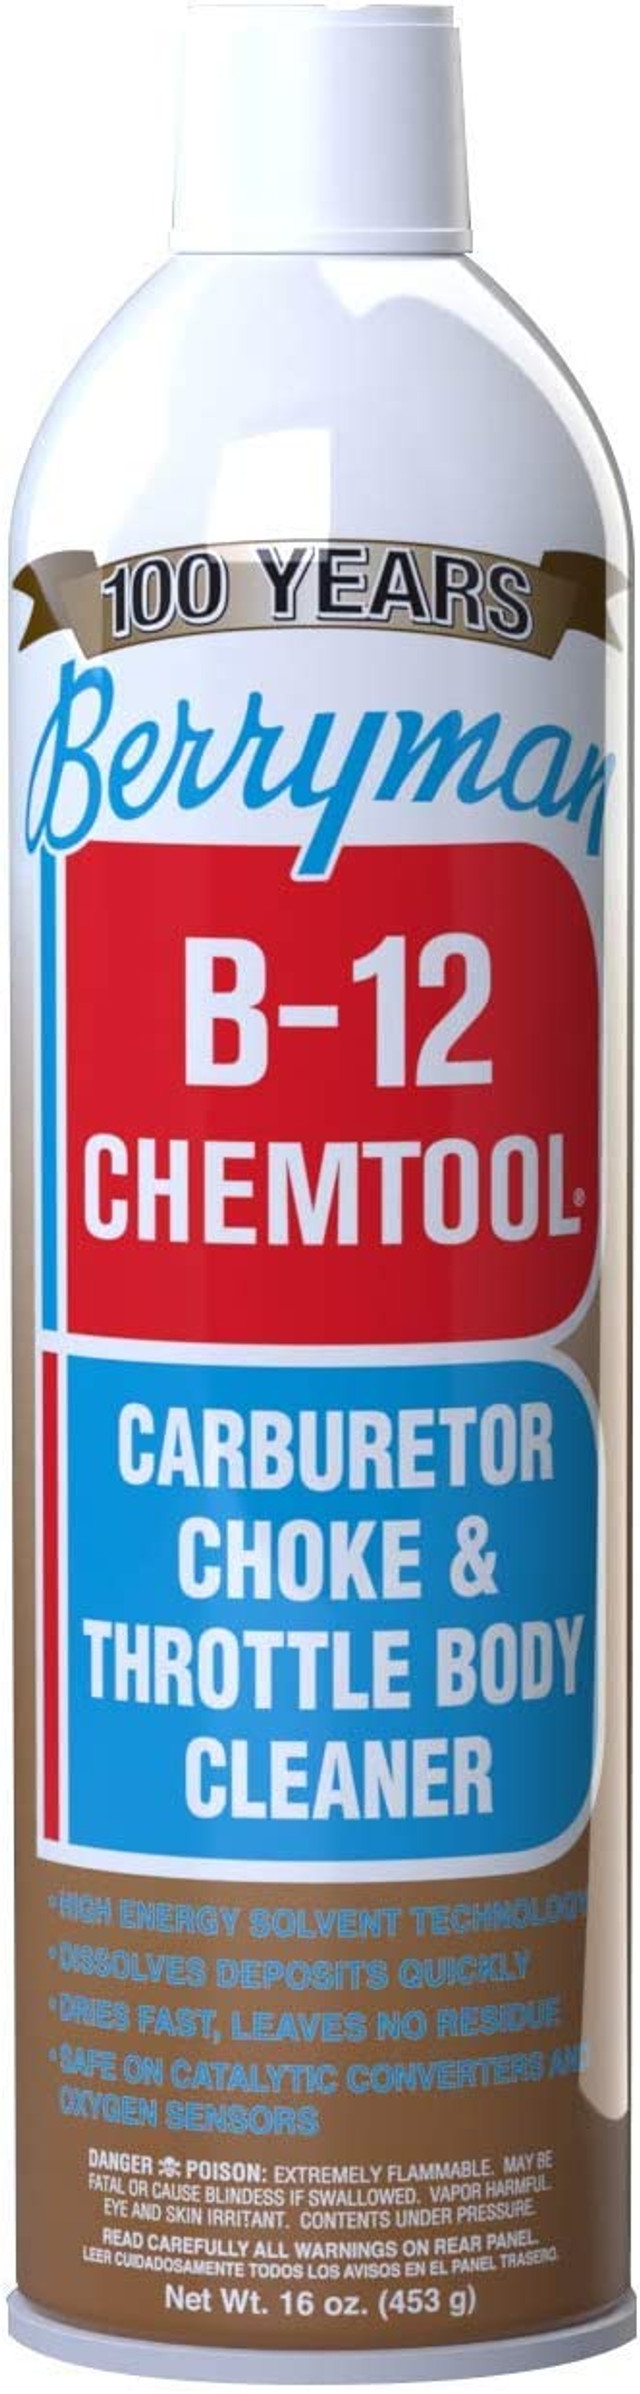 BERRYMAN b-12 Chemtool Vergaserreiniger (0117)